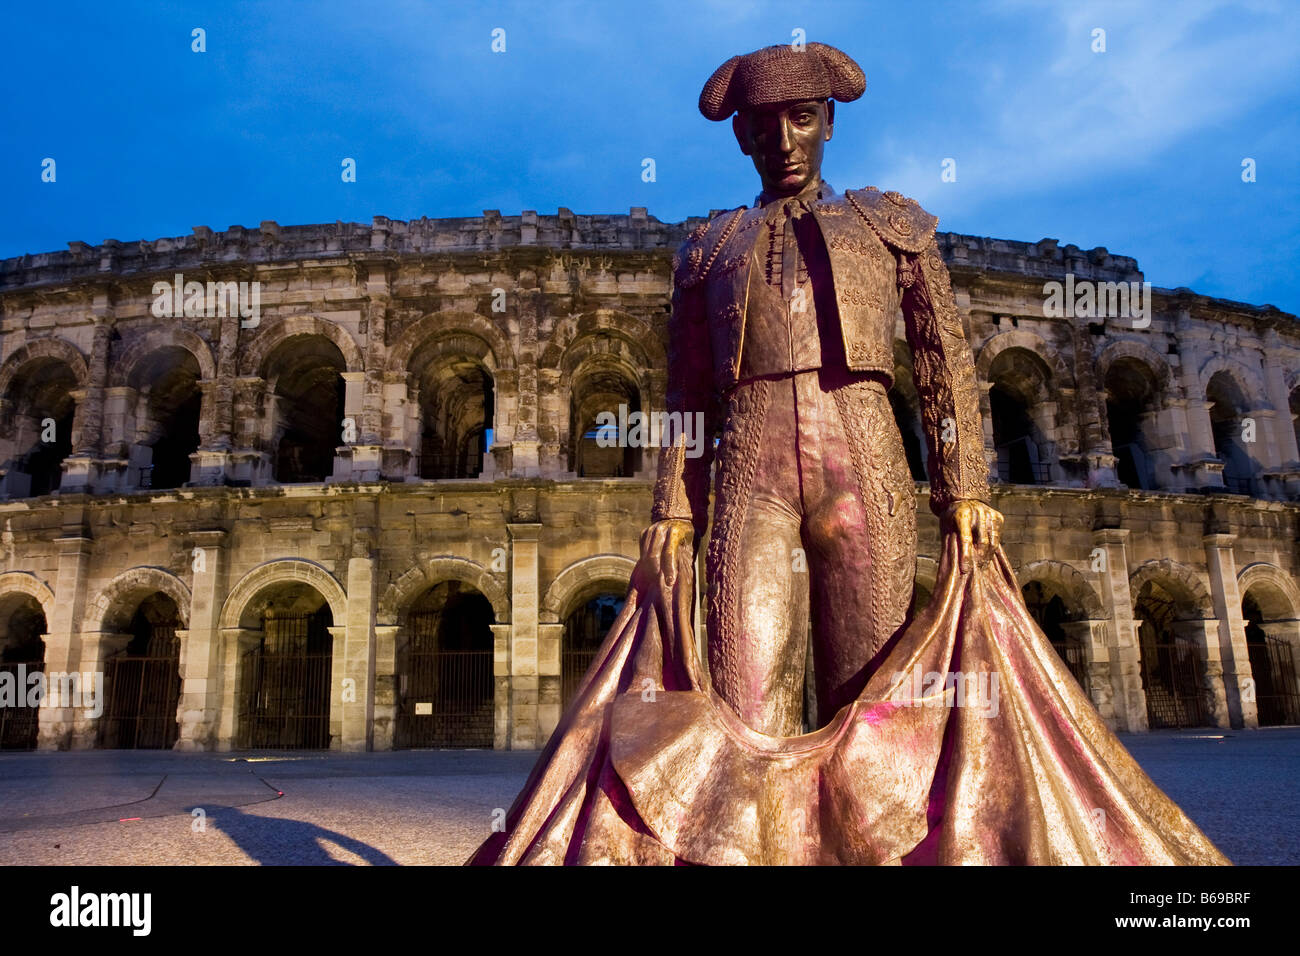 Statua del torero di fronte all'Arena nella città francese di Nimes all'imbrunire, sud della Francia, Europa Foto Stock